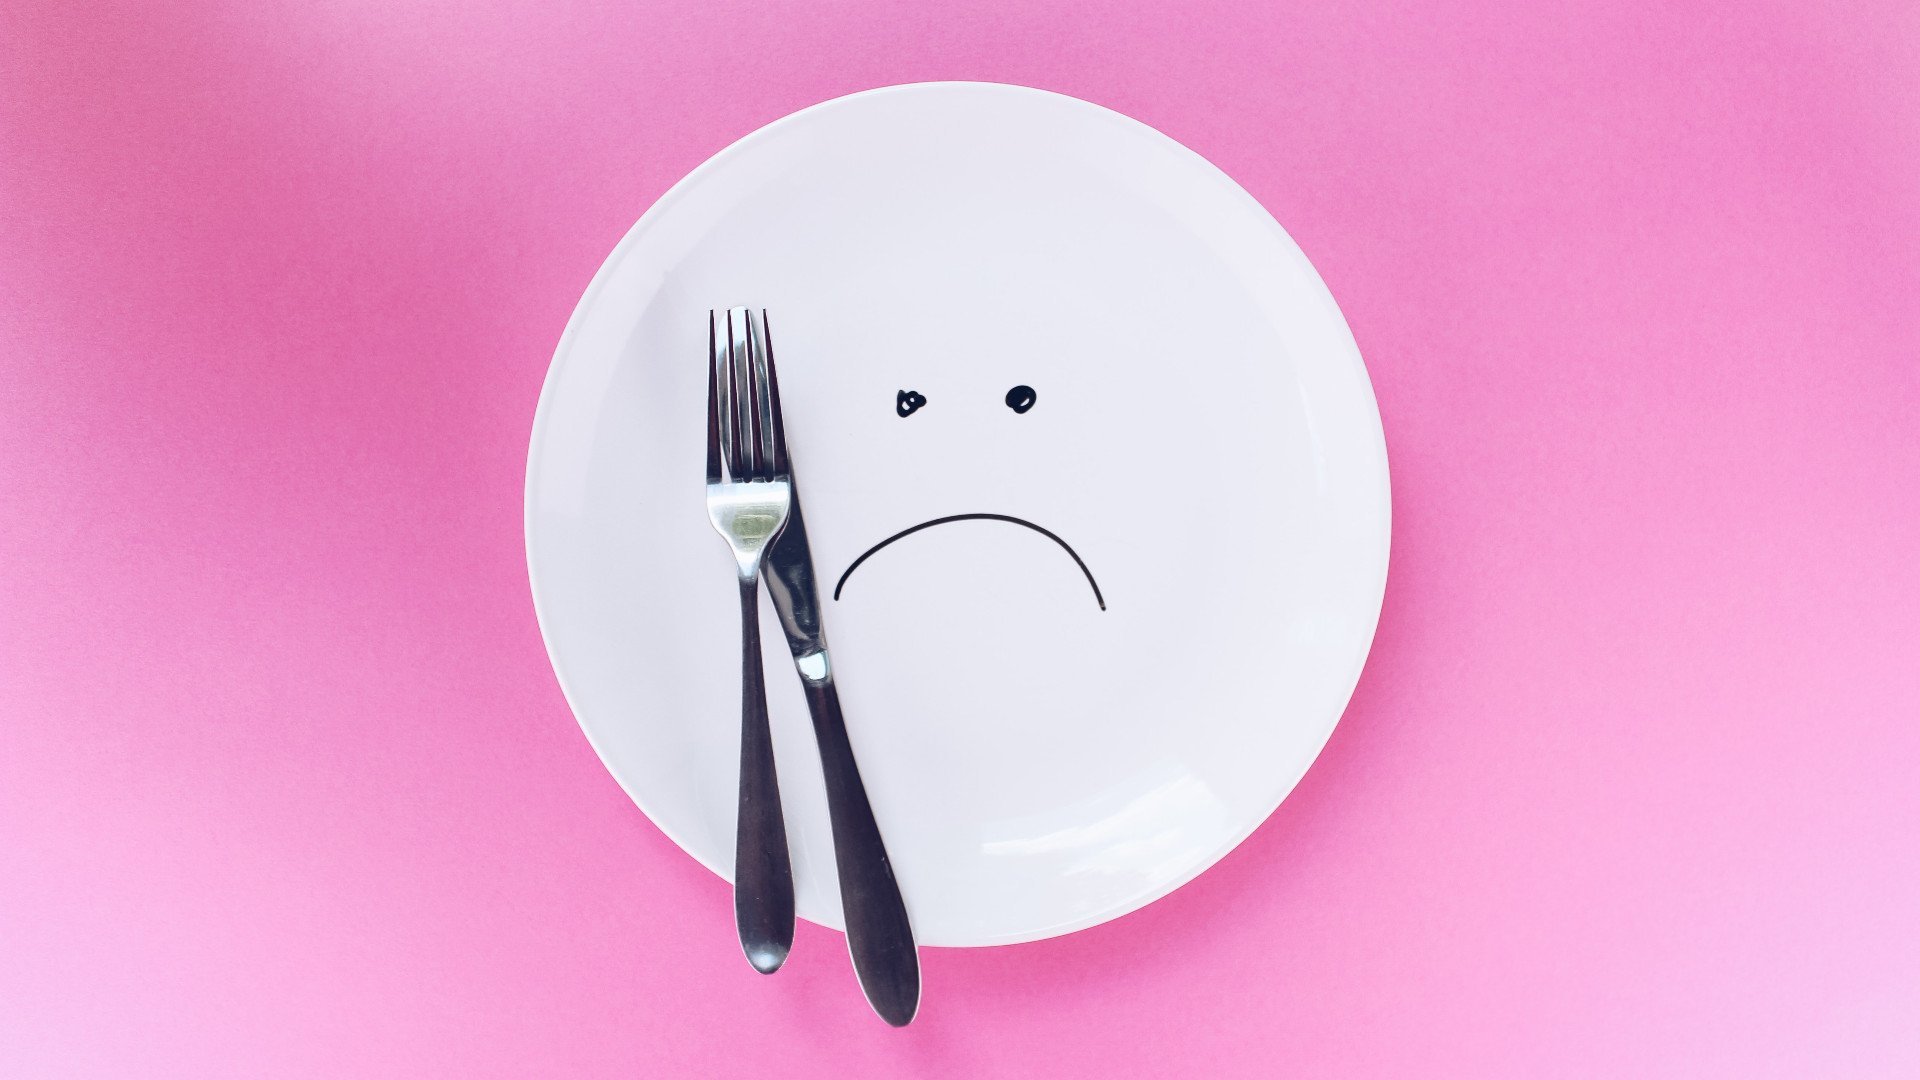 Foto de capa do artigo "Dieta restritiva: é prejudicial à saúde? Veja as consequências"